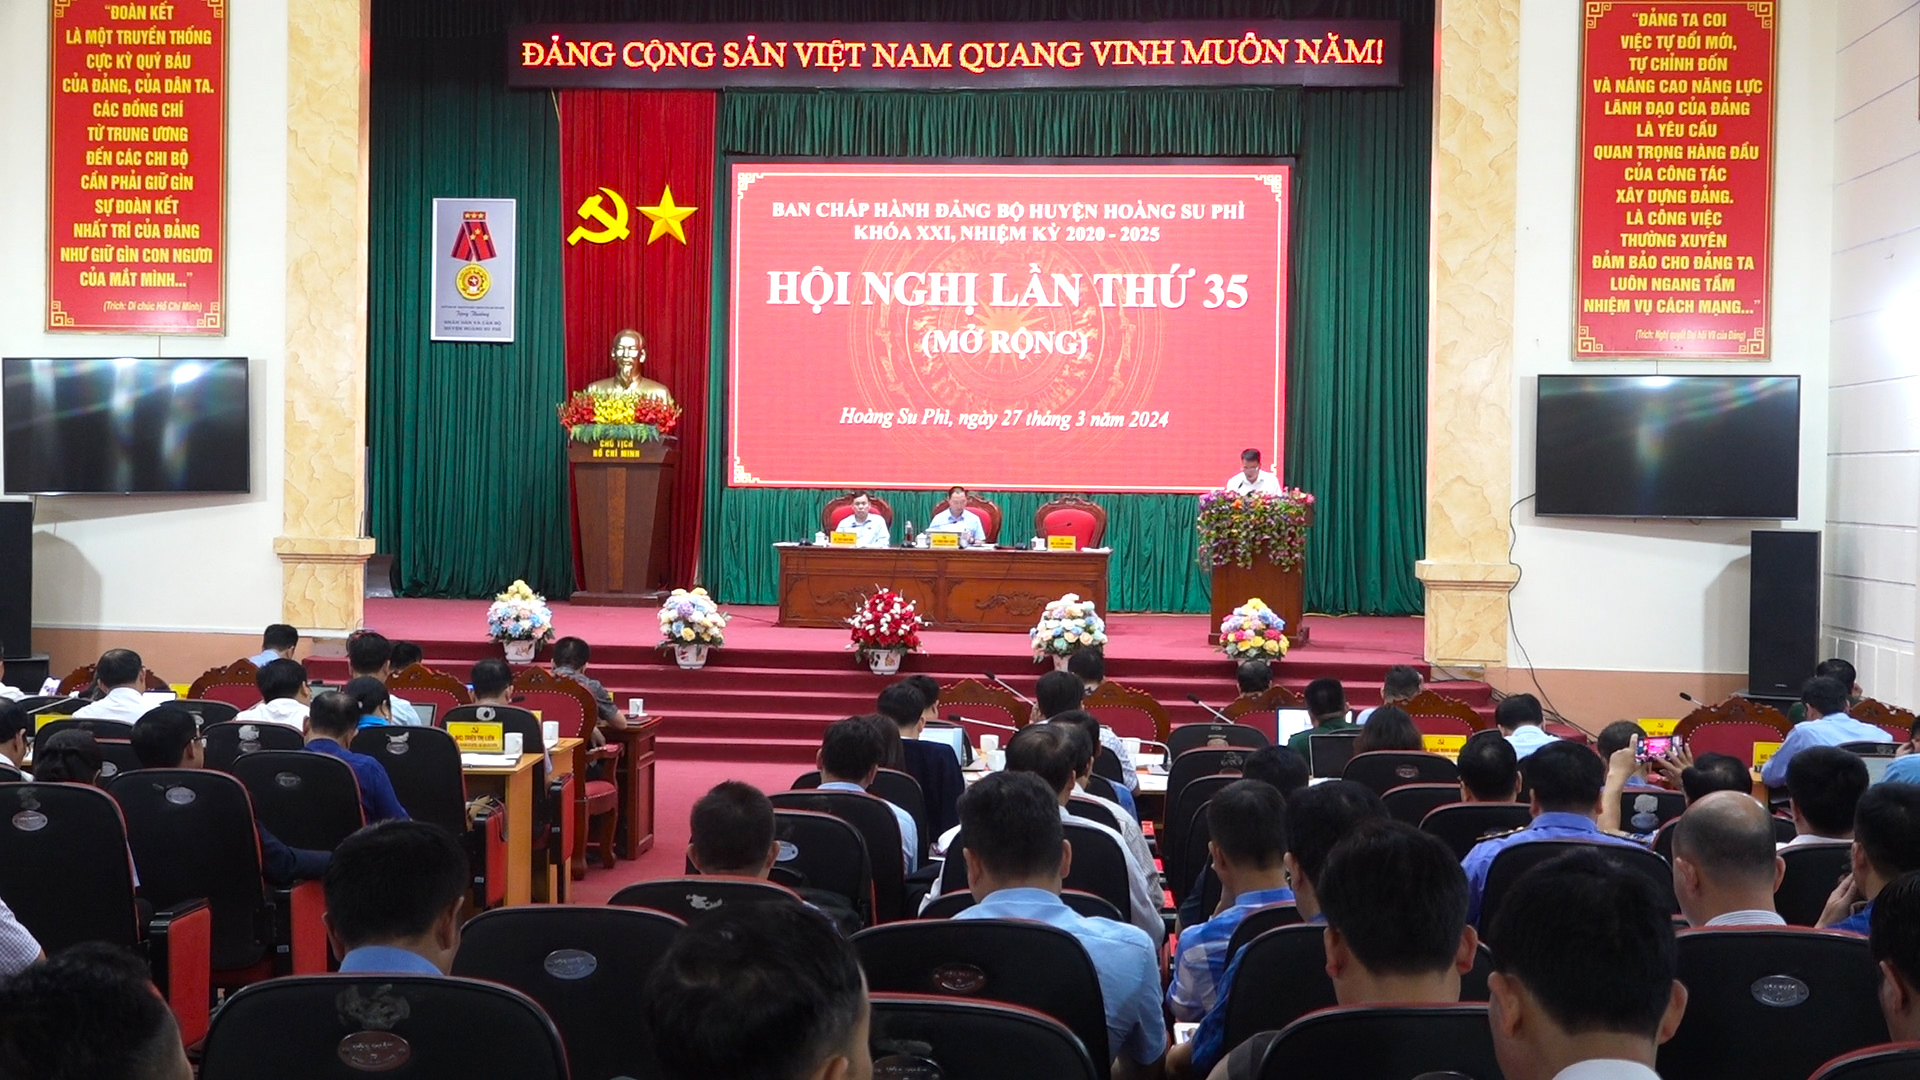 Huyện Hoàng Su Phì tổ chức Hội nghị Ban chấp hành lần thứ 35 (Mở rộng).